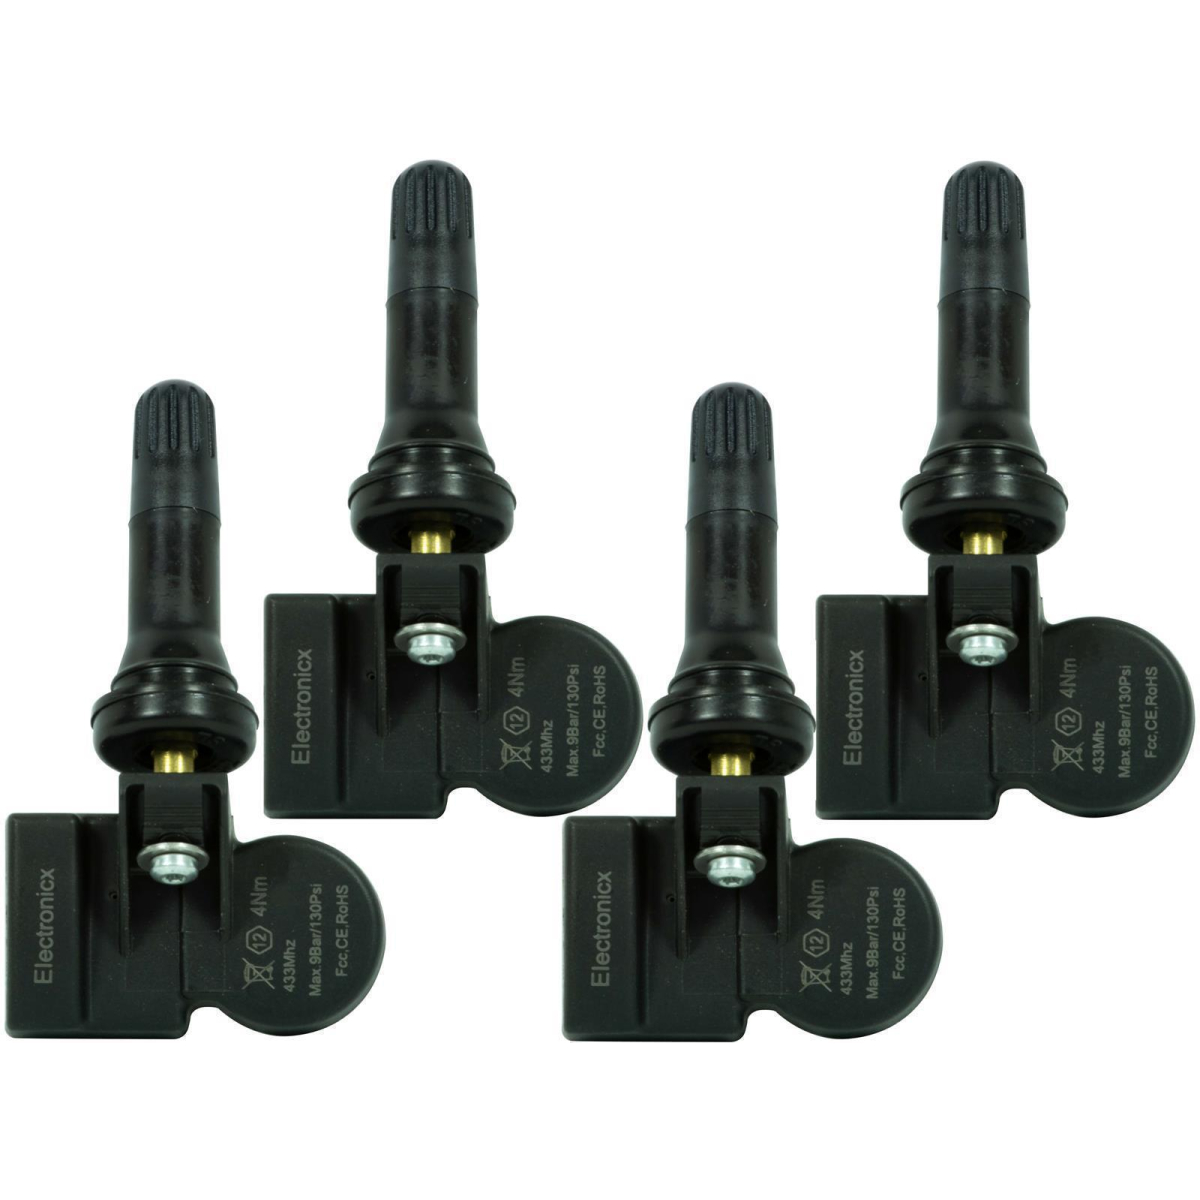 4 tire pressure sensors rdks sensors rubber valve for Maxus G10 DIAS 01.2014-12.2020